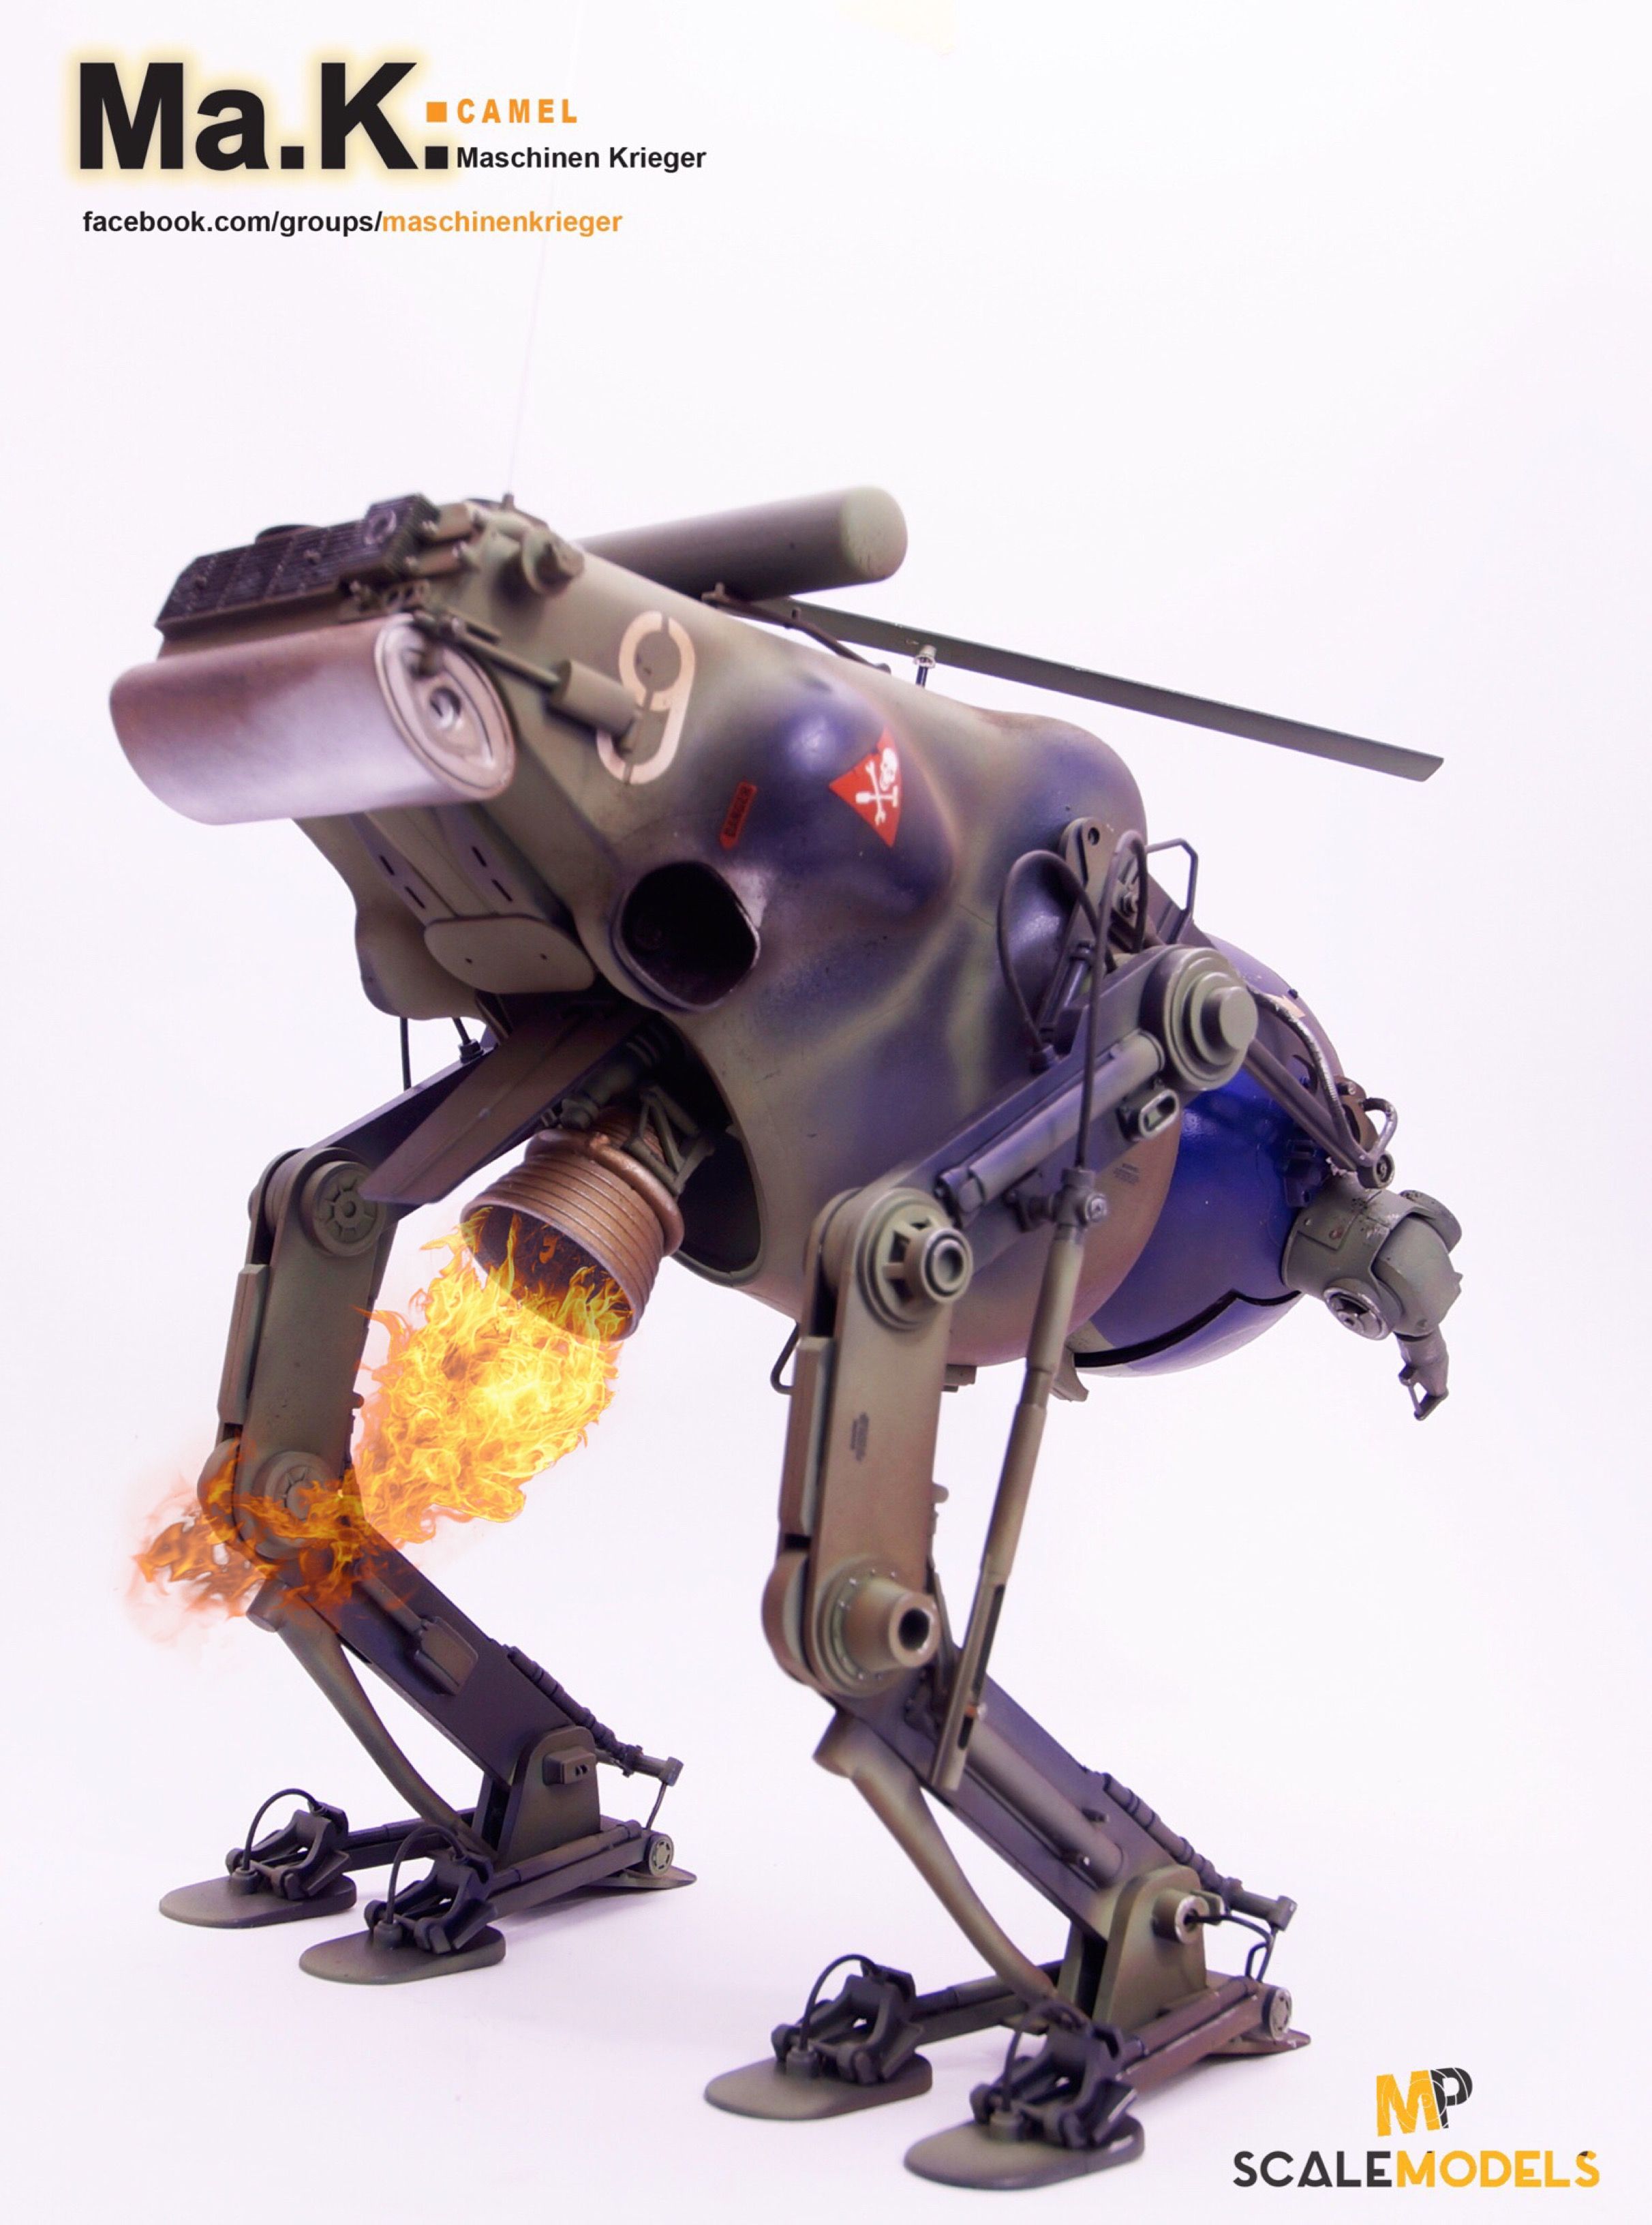 Pin by Marcel on Scale models Ma.k | Pinterest | Robot, Dieselpunk ...